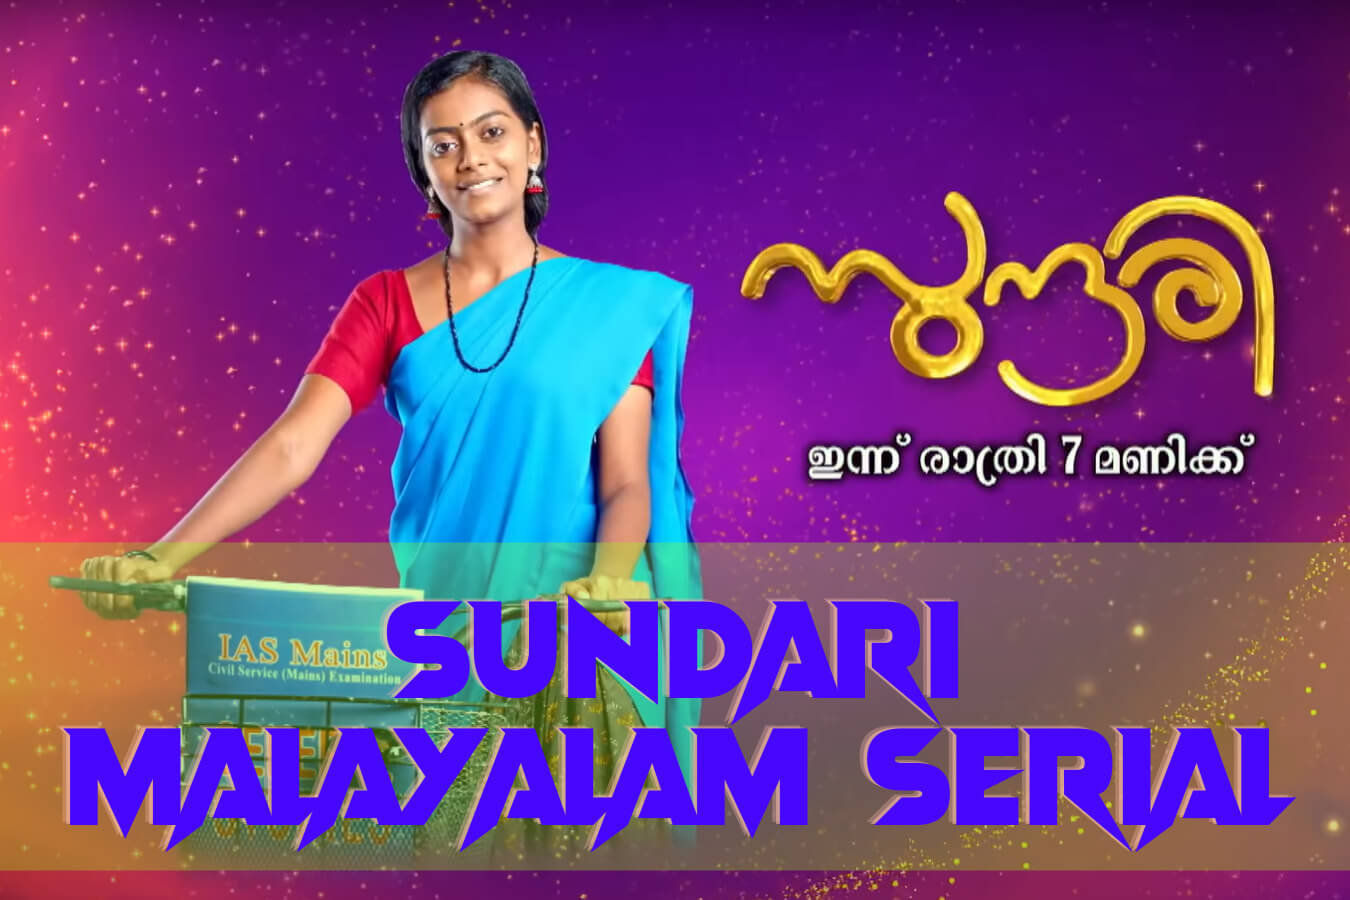 Sundari Malayalam Serial